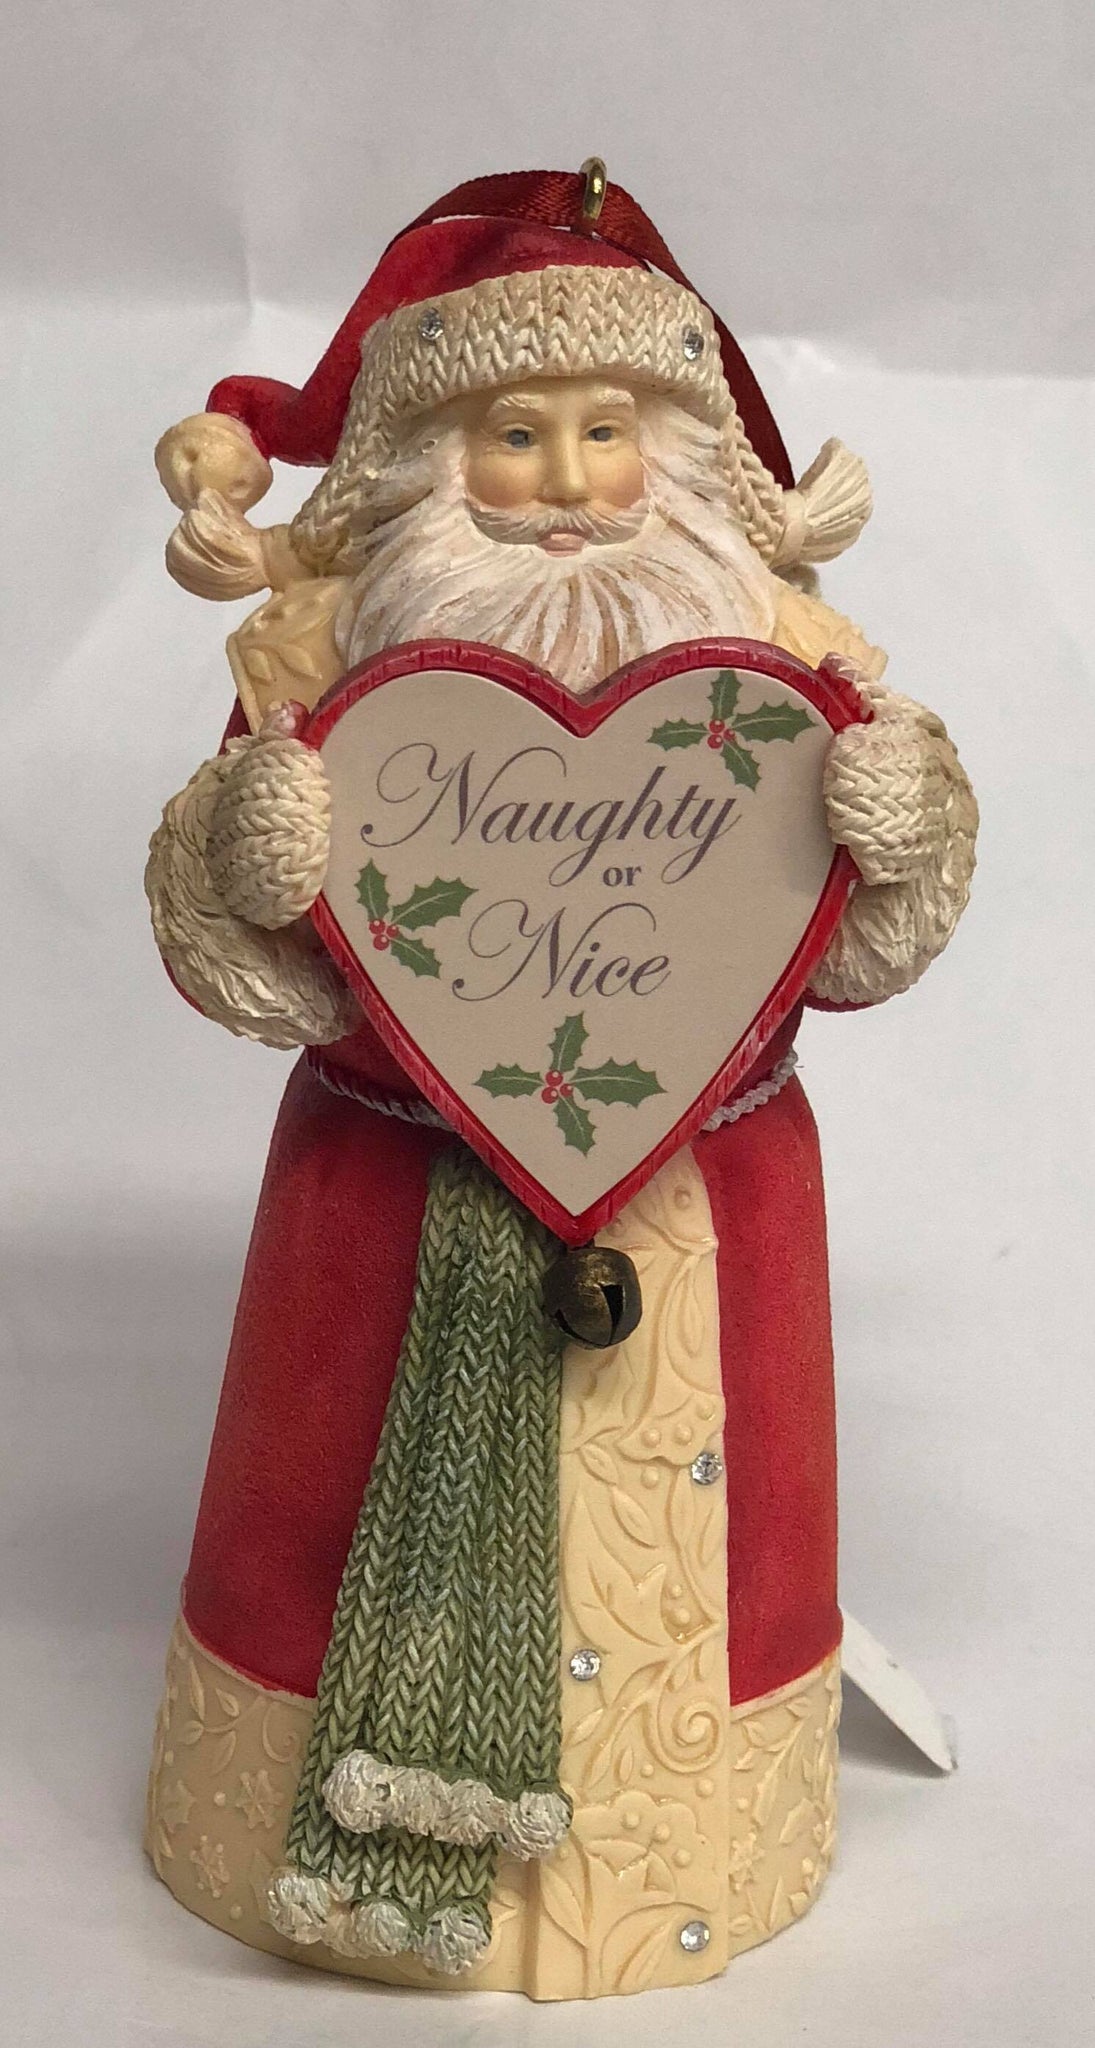 Santa Tree Ornament- holding heart "Naughty or Nice"